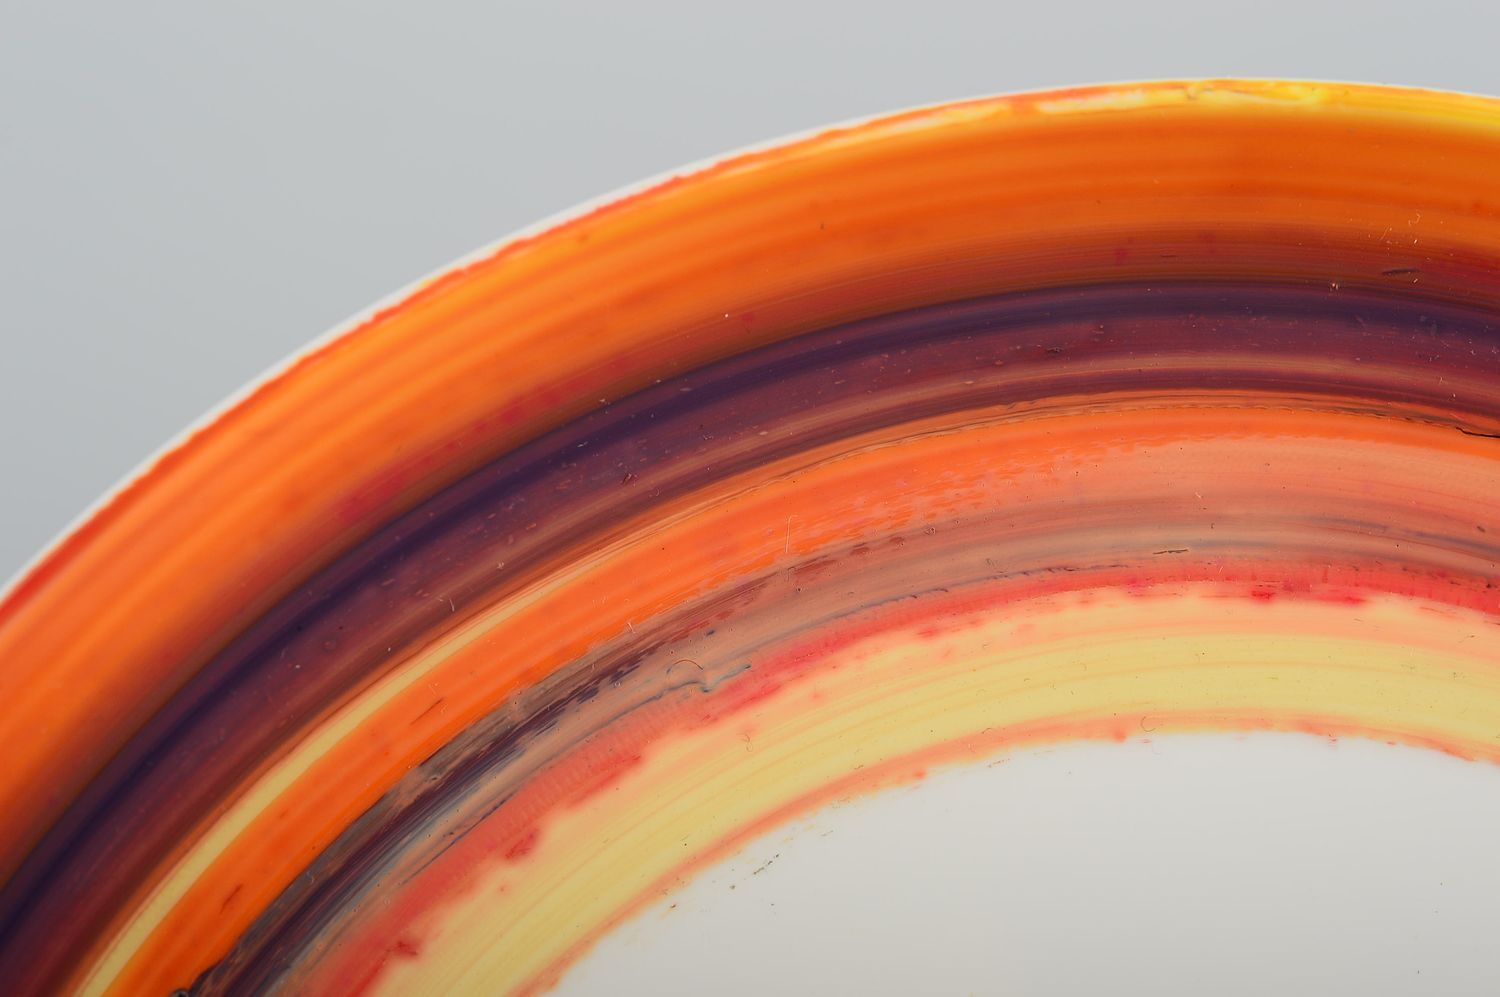 Керамическая тарелка ручной работы глиняная посуда расписная тарелка красивая фото 4